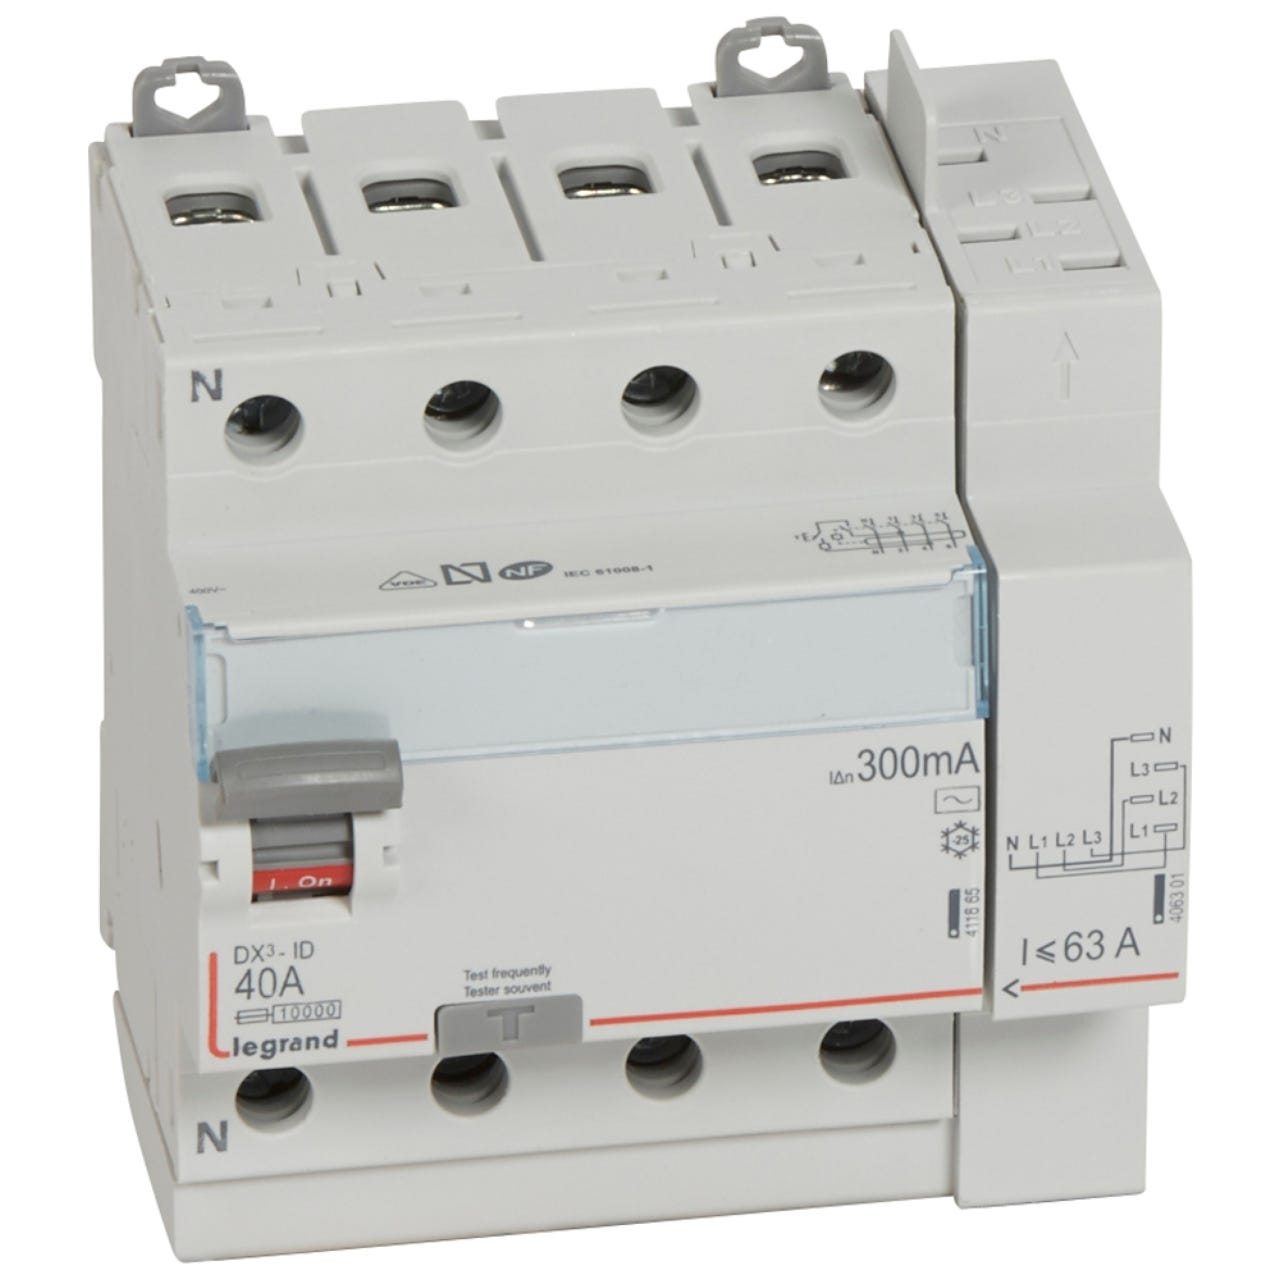 interrupteur différentiel legrand dx3 40a 300ma 4 poles type ac - vis / auto 0